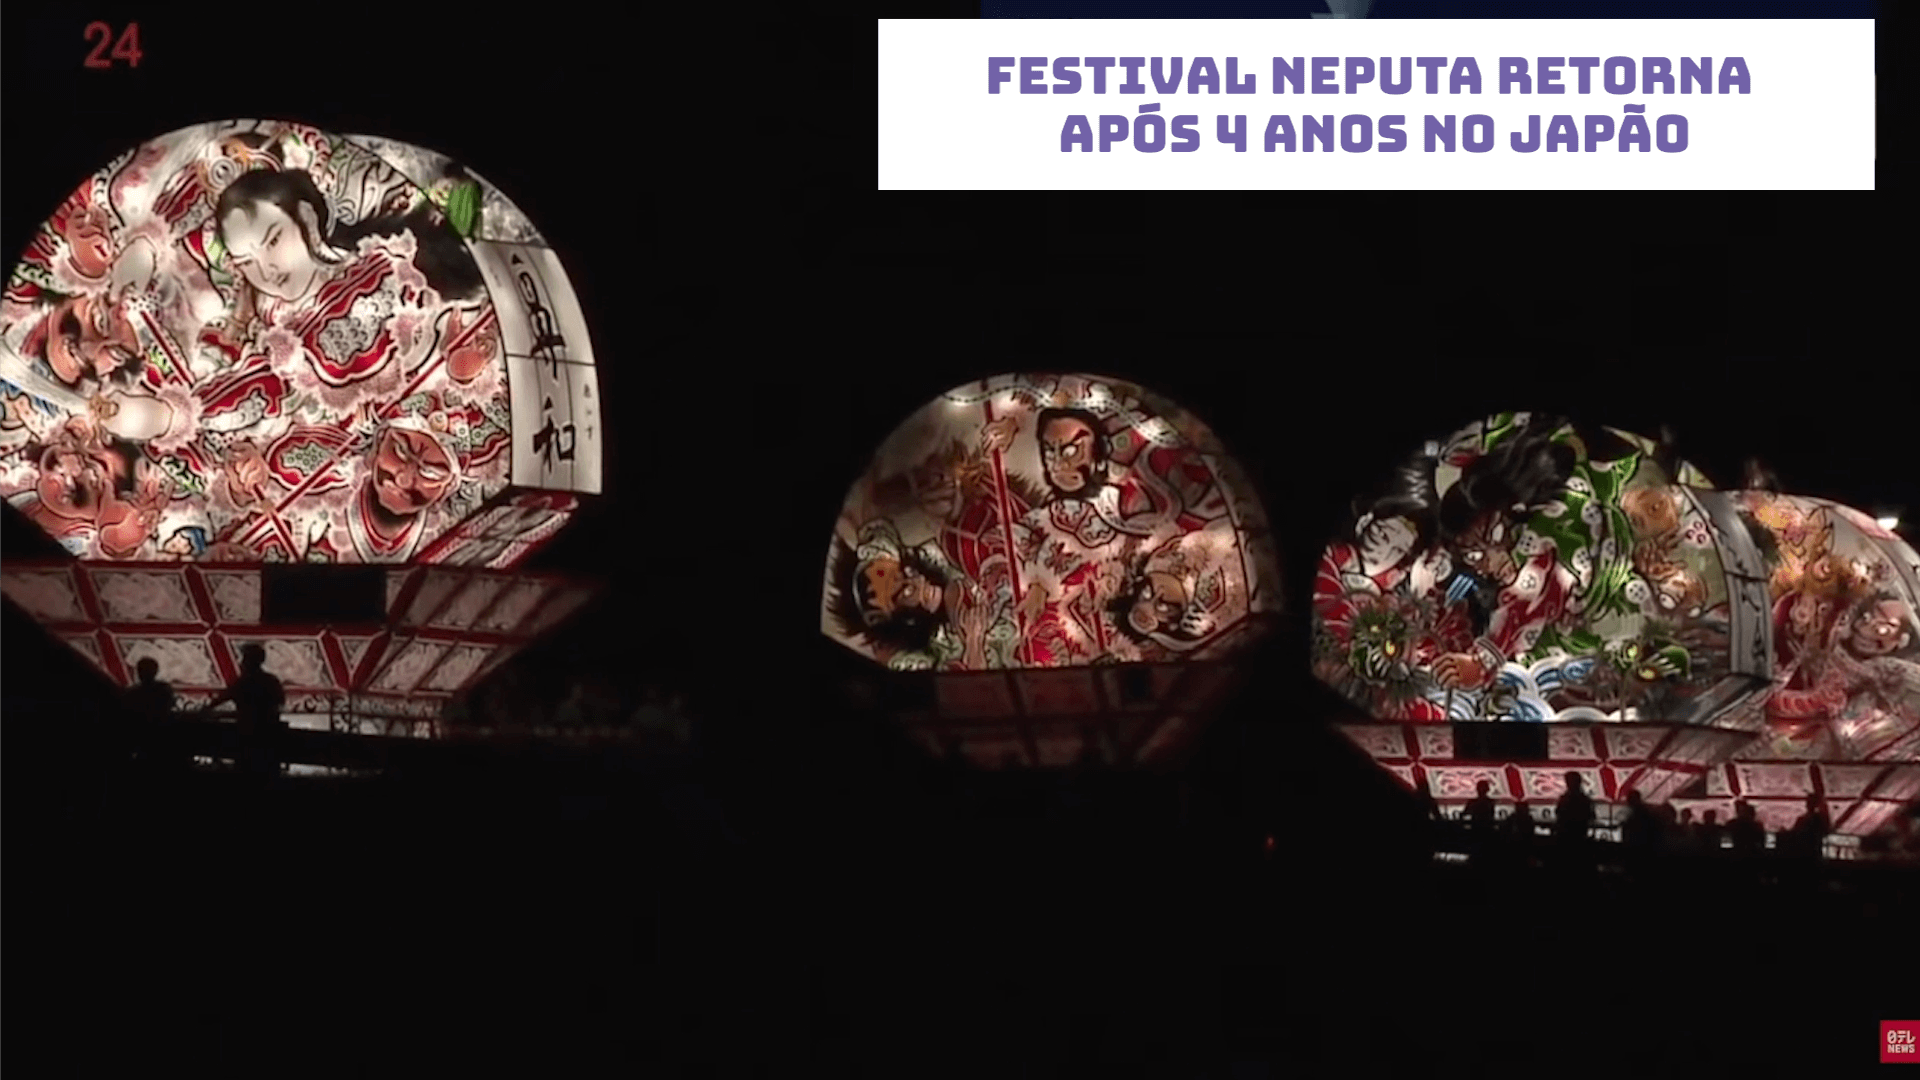 Festival Neputa retorna após 4 anos no Japão